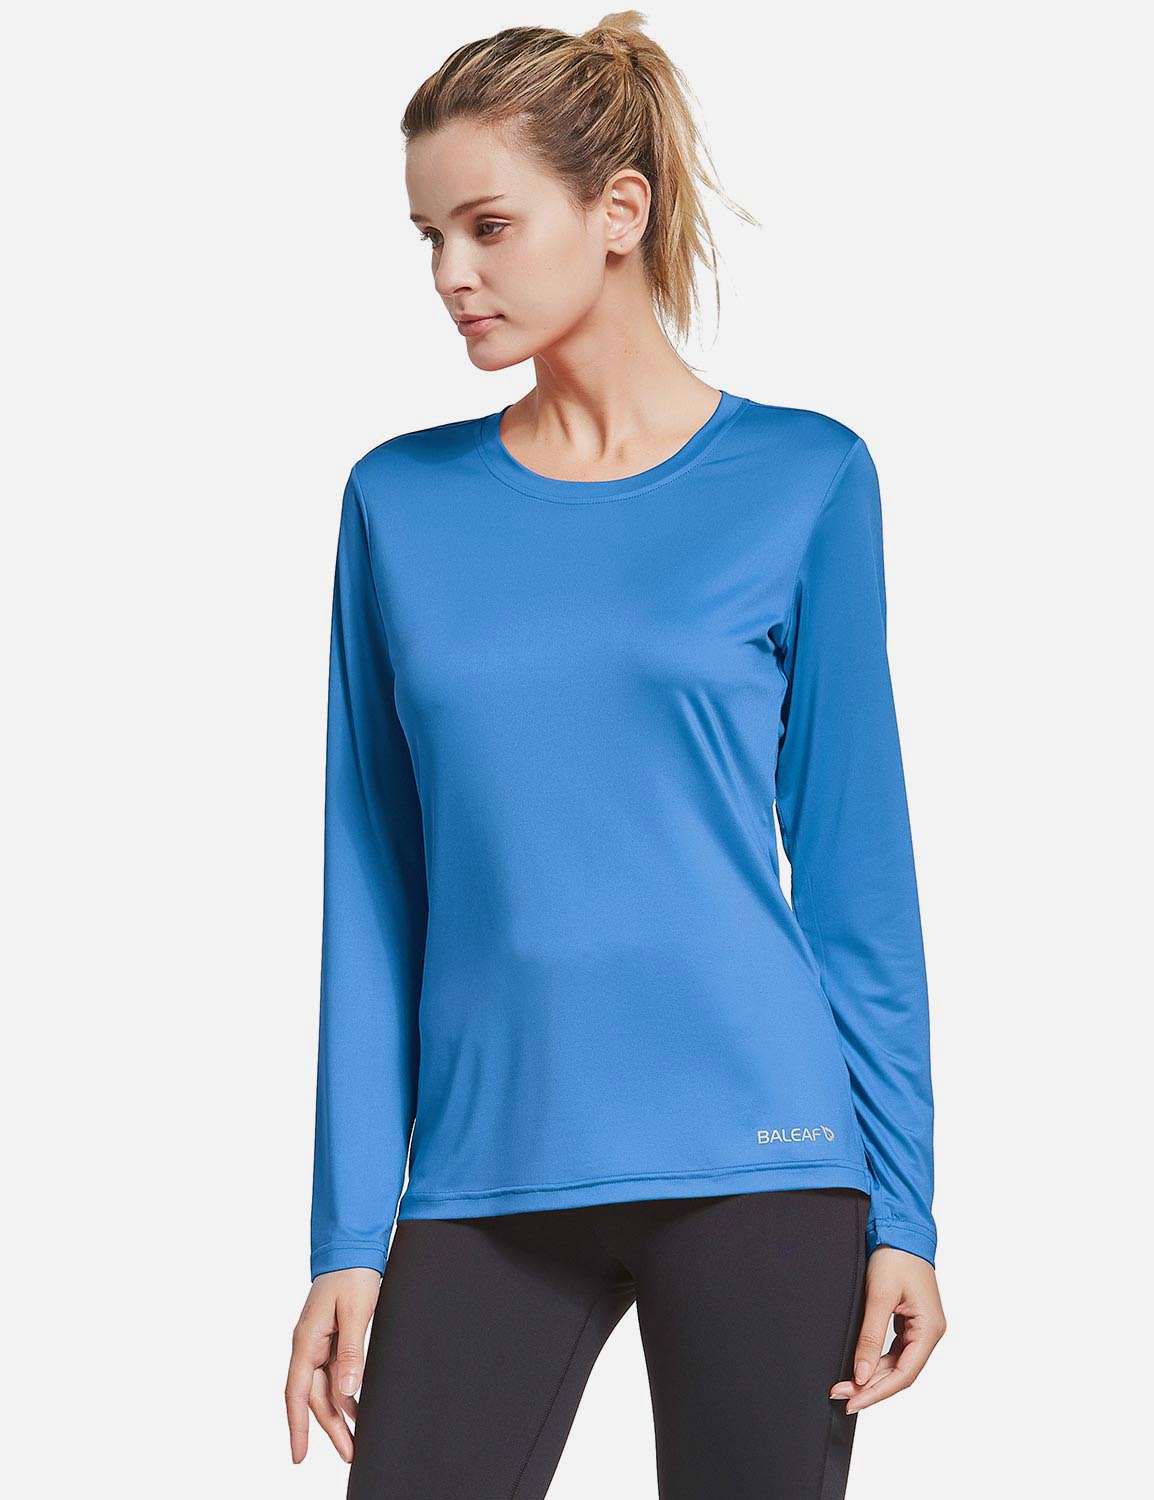 BALEAF Women's Loose Fit Tagless Workout Long Sleeved Shirt abd294 Royal Blue Front